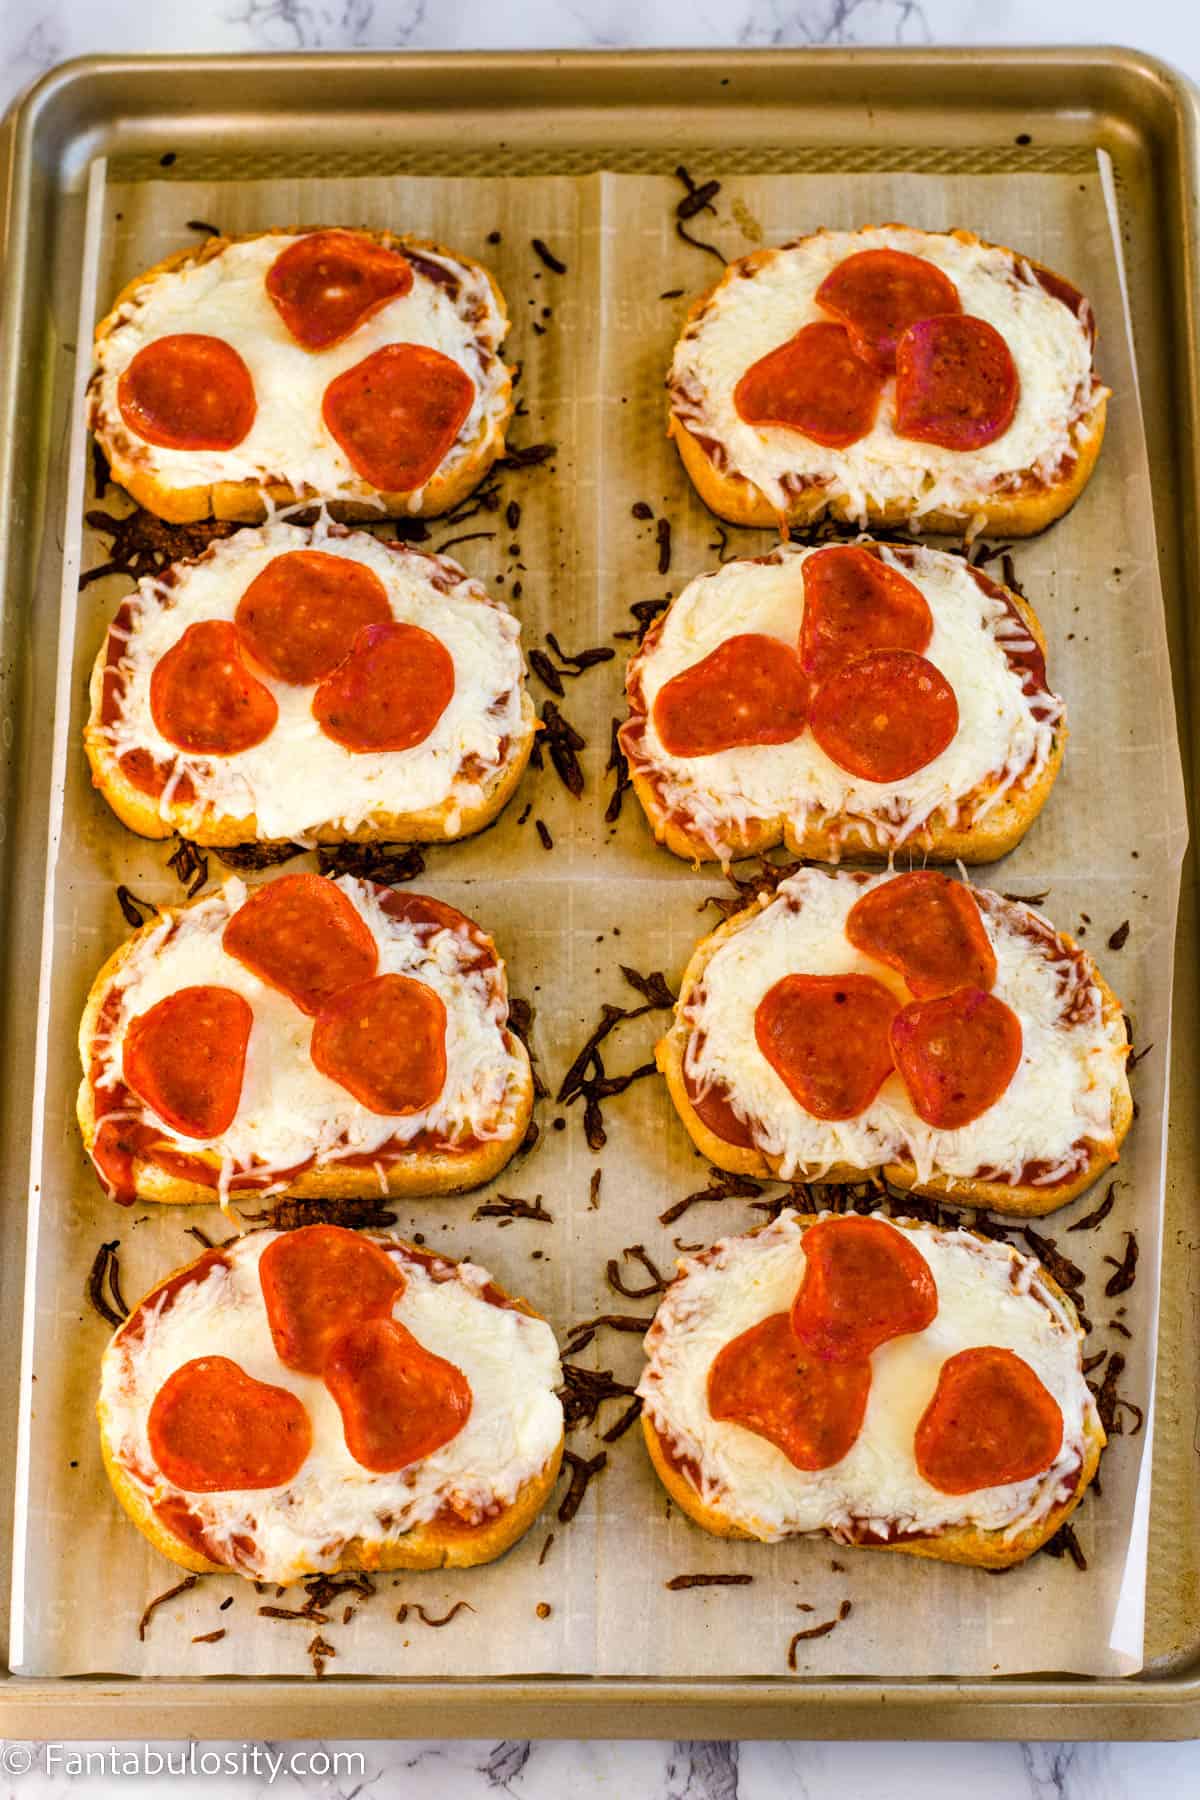 baked texas toast pizza on baking sheet